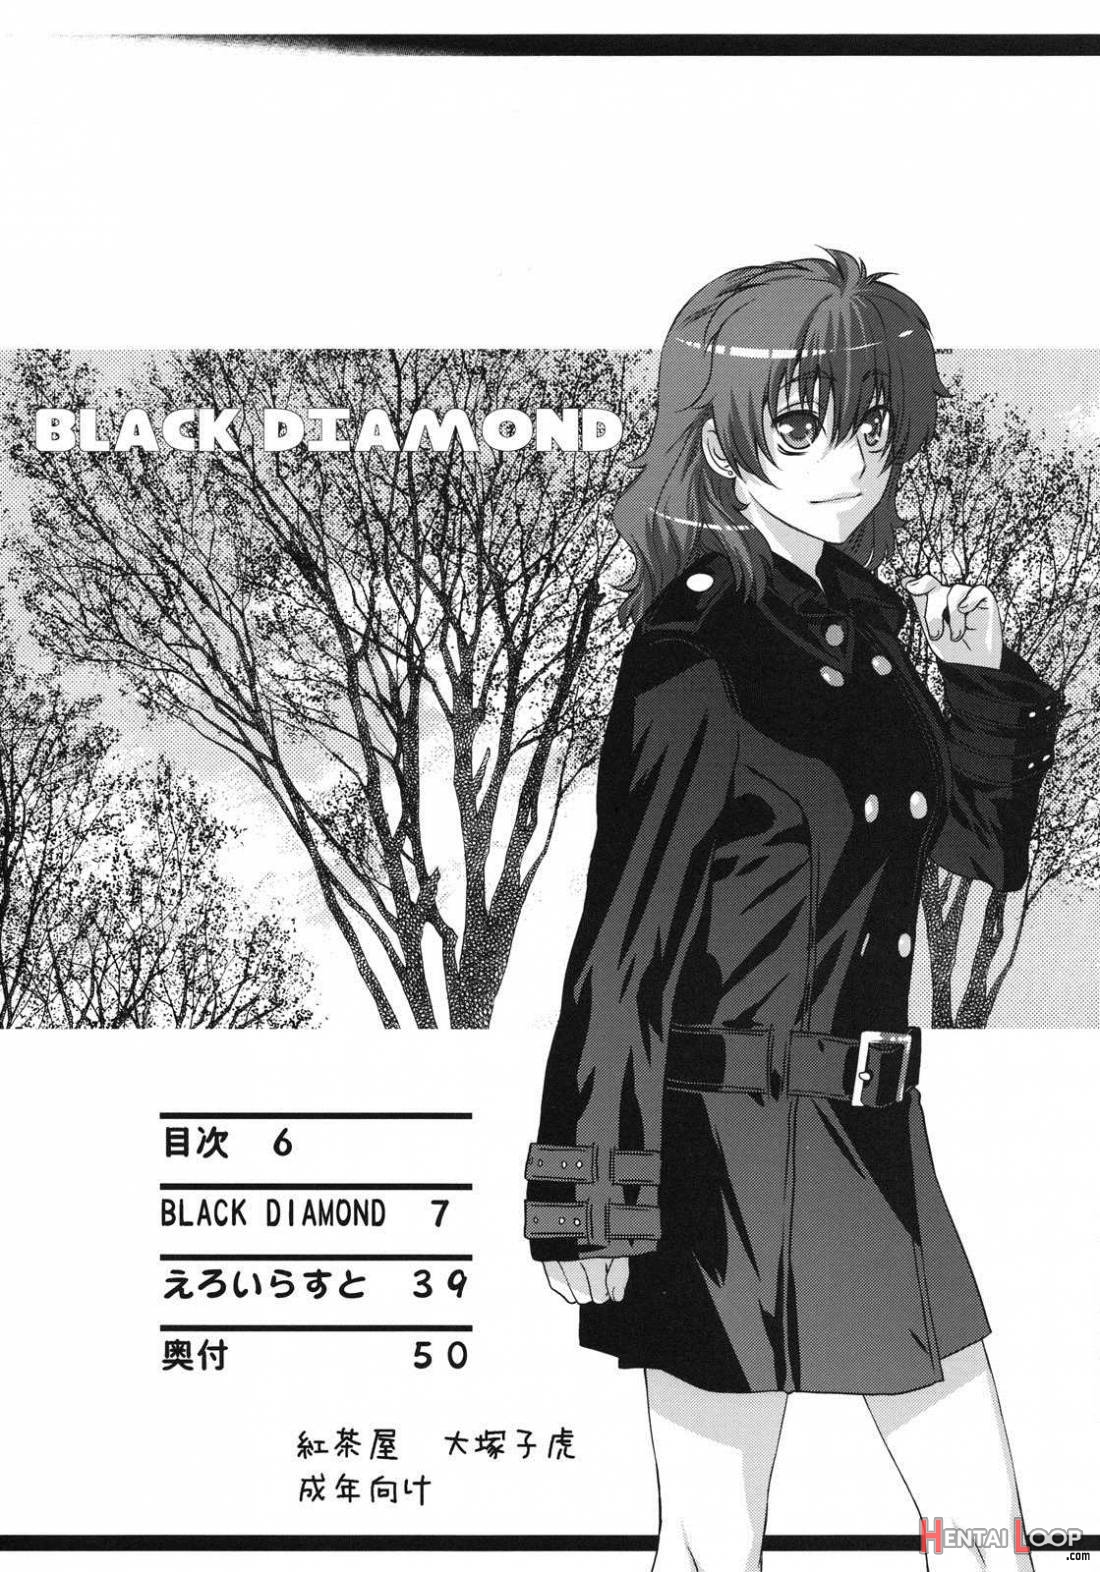 Black Diamond page 2